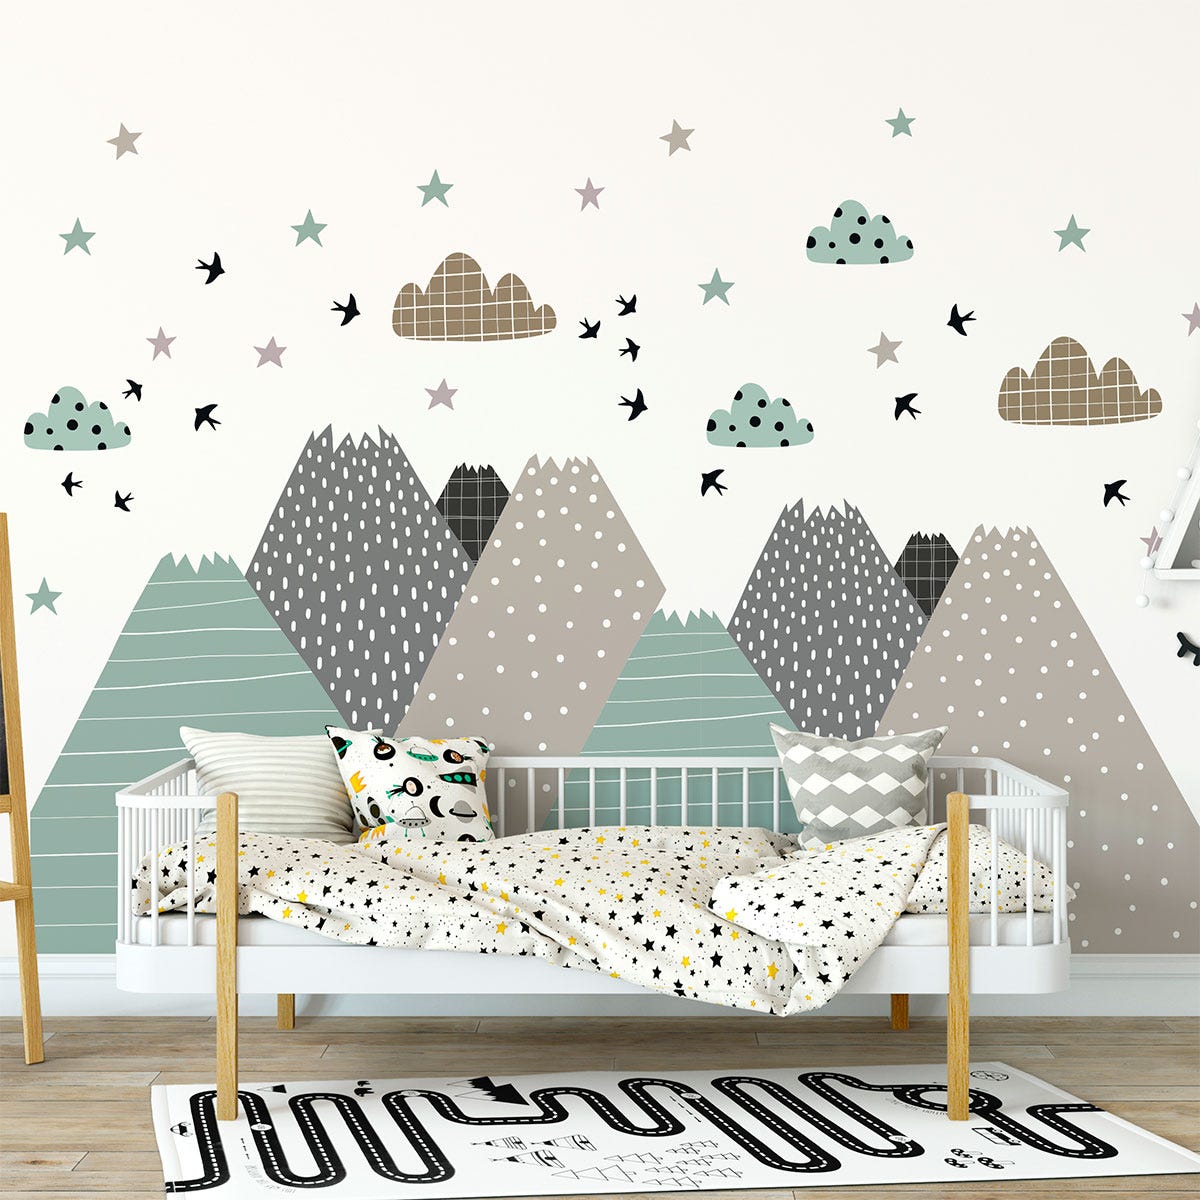 10 Idées de Stickers Muraux pour une Jolie Chambre d'Enfant !